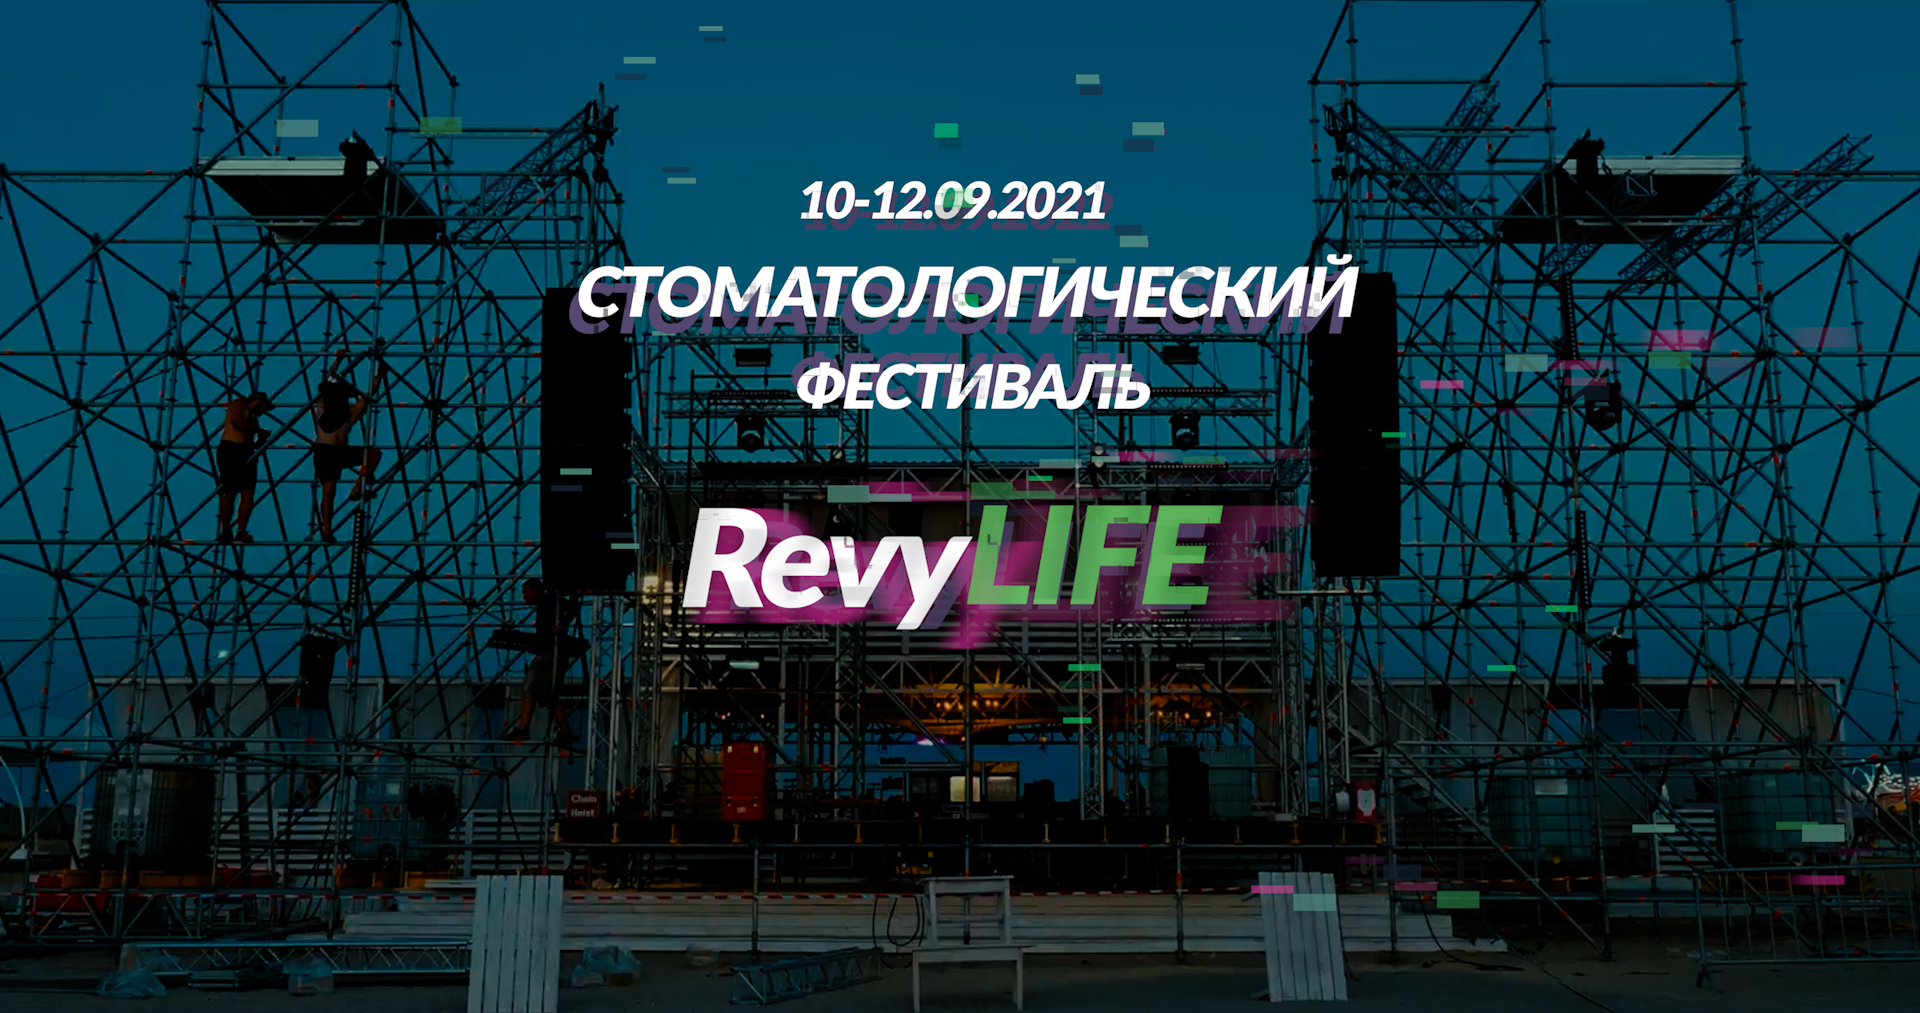 RevyLIFE Стоматологический фестиваль 10-12.09.2021